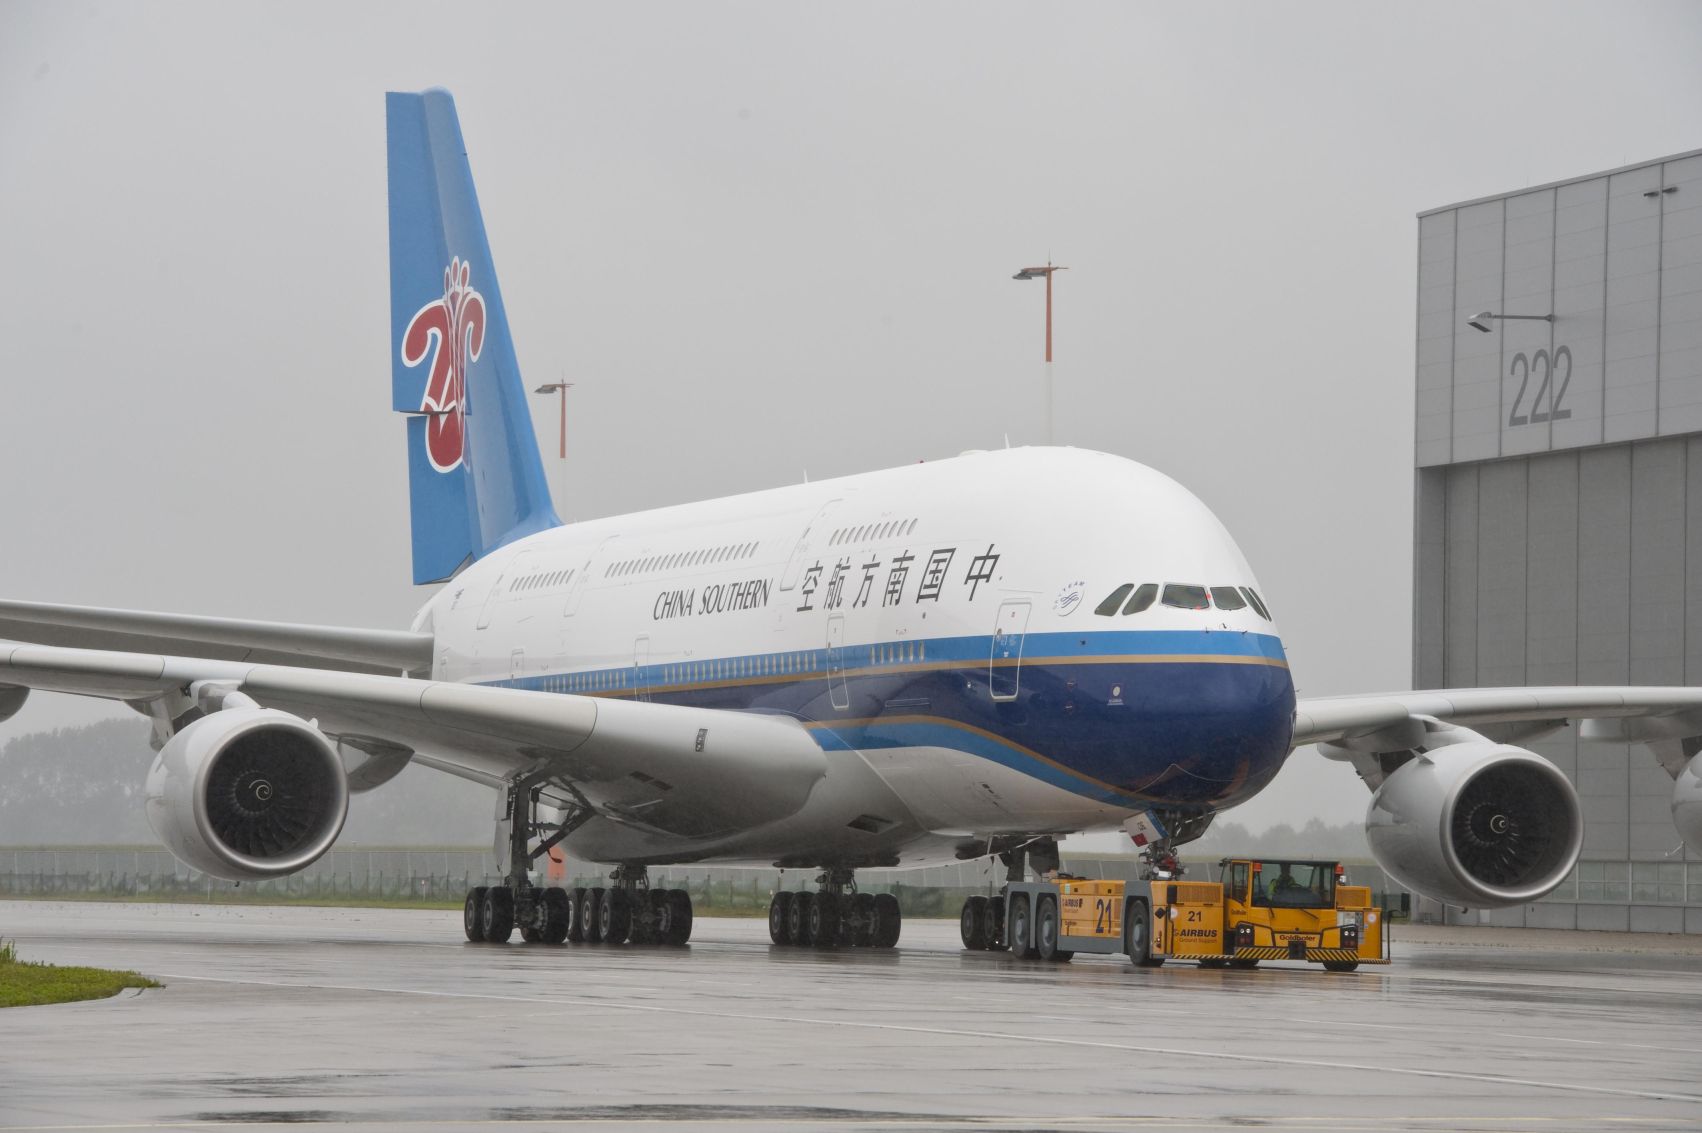 Az európai óriás már repül kínai légitársaságnál is...